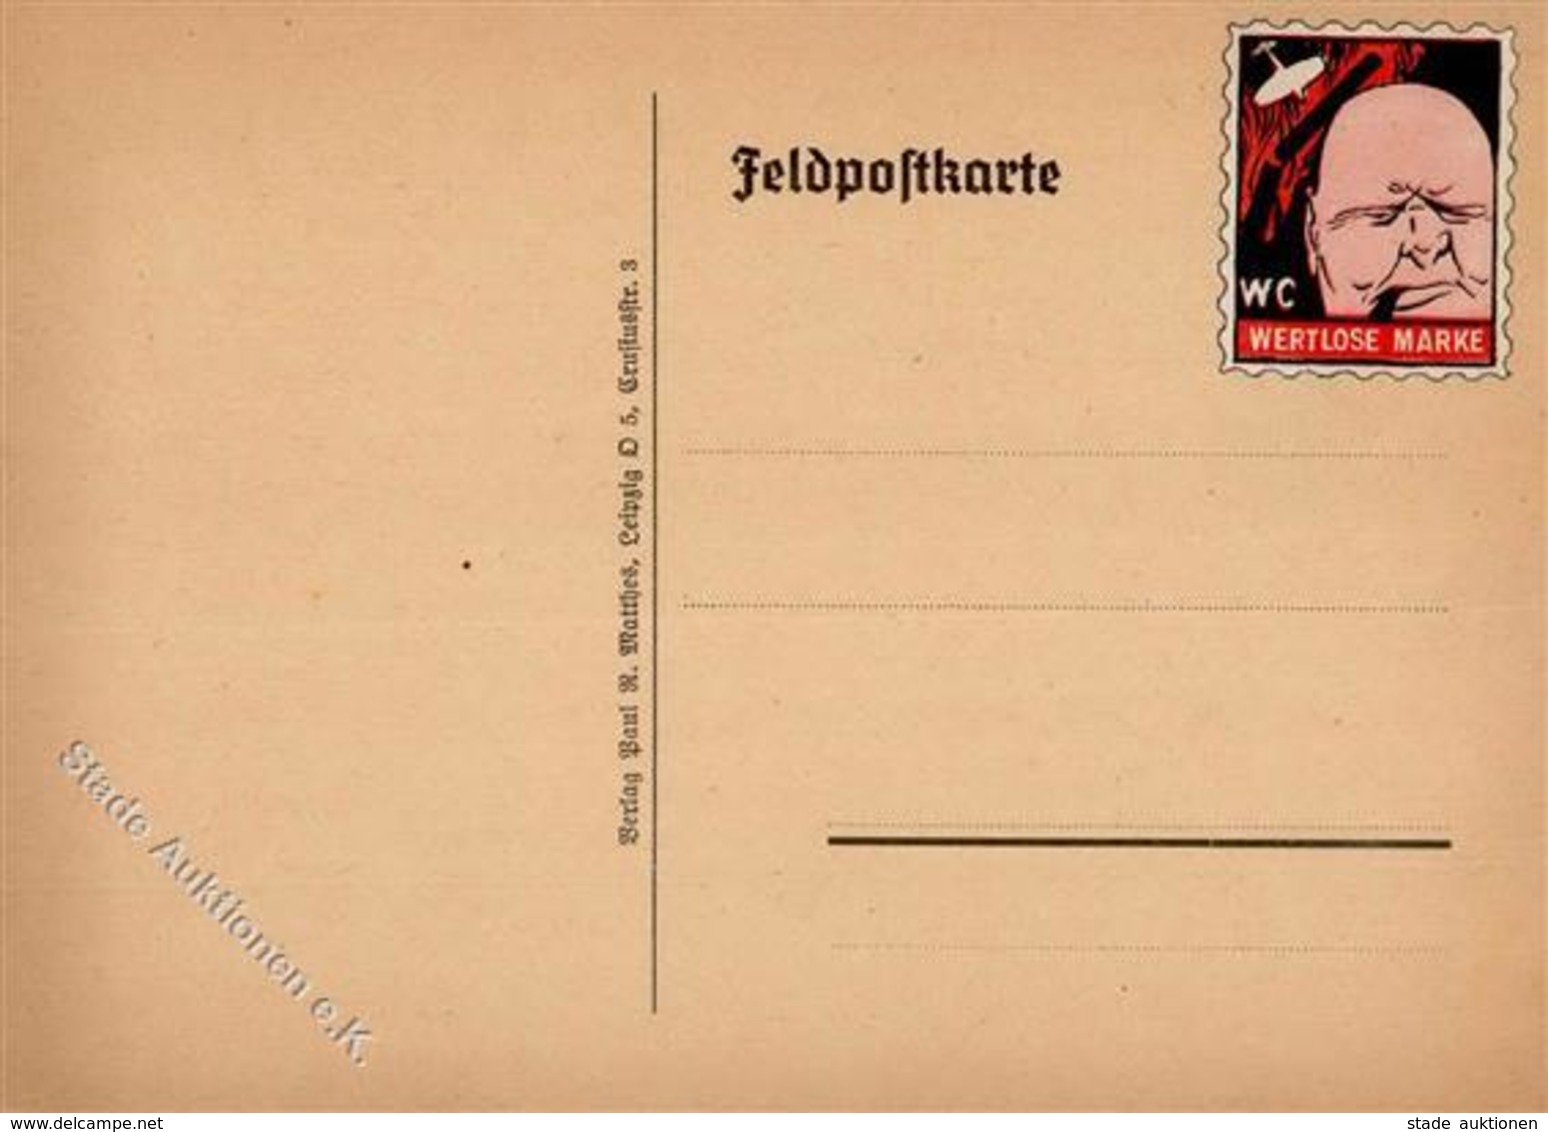 FELDPOST WK II - Feldpostspottkarte  CHURCHILL Mit VIGNETTE -WERTLOSE MARKE- I I - Weltkrieg 1939-45